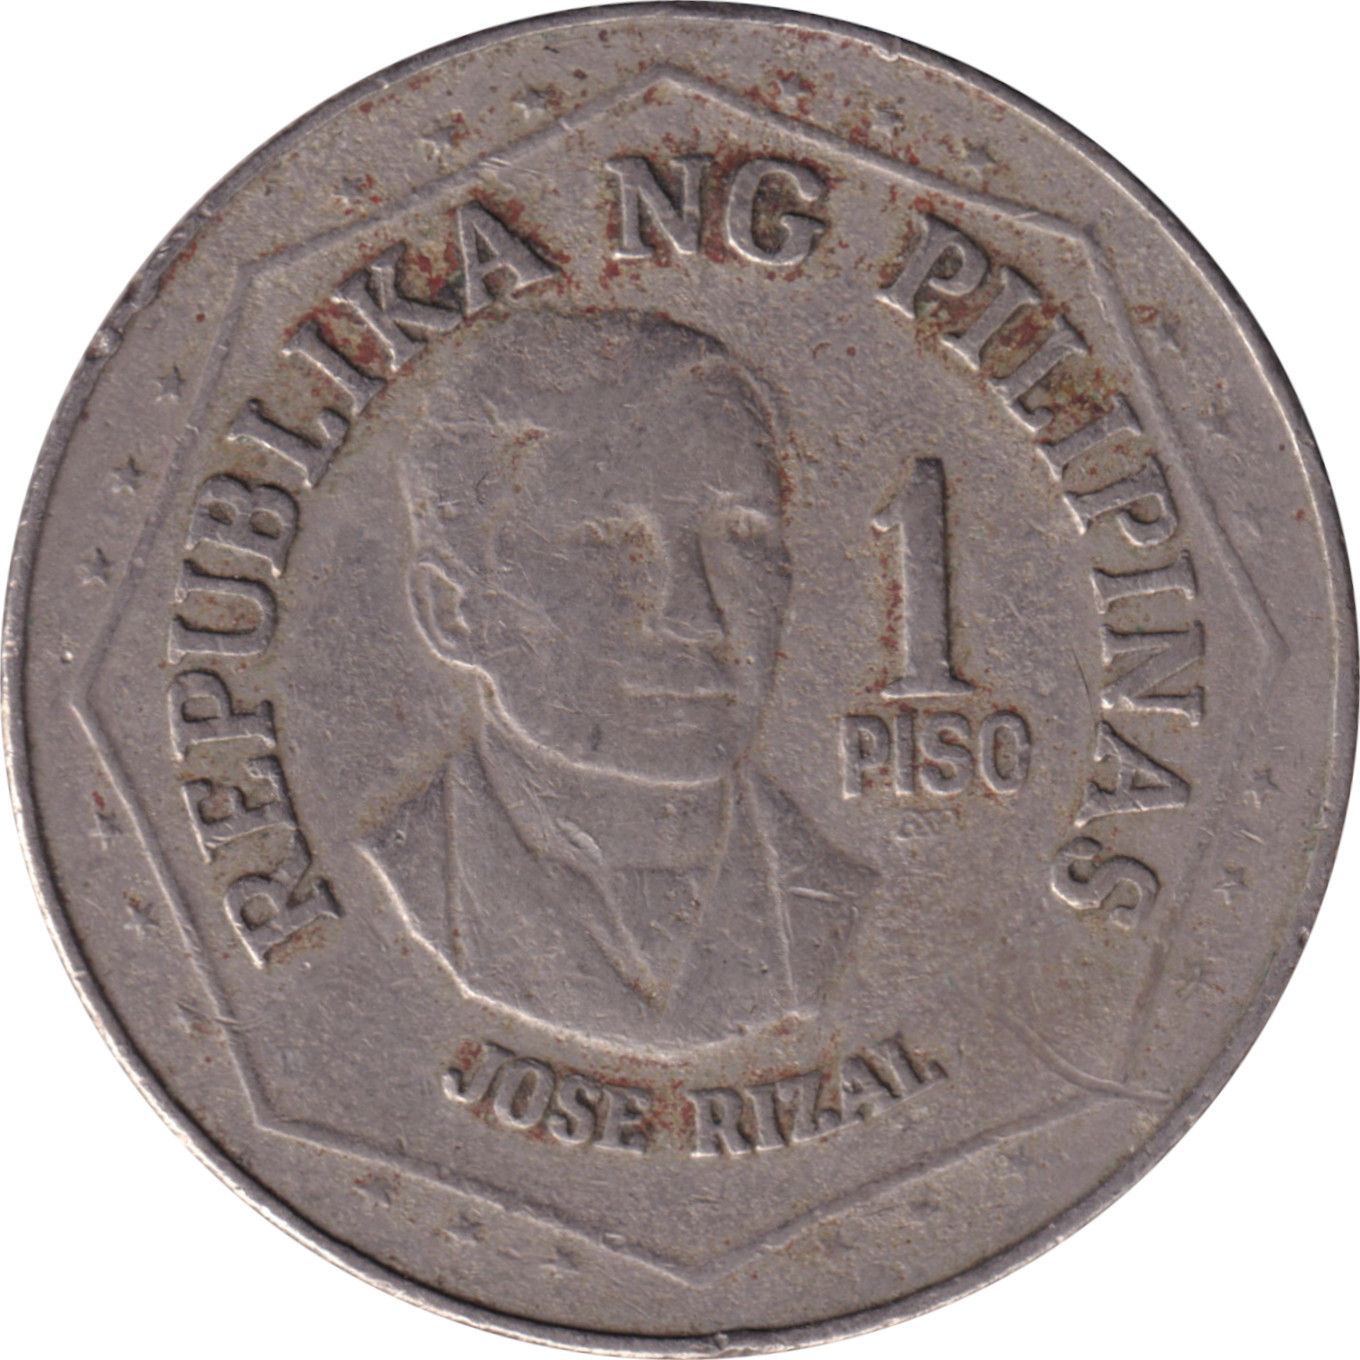 1 piso - Jose Rizal de face